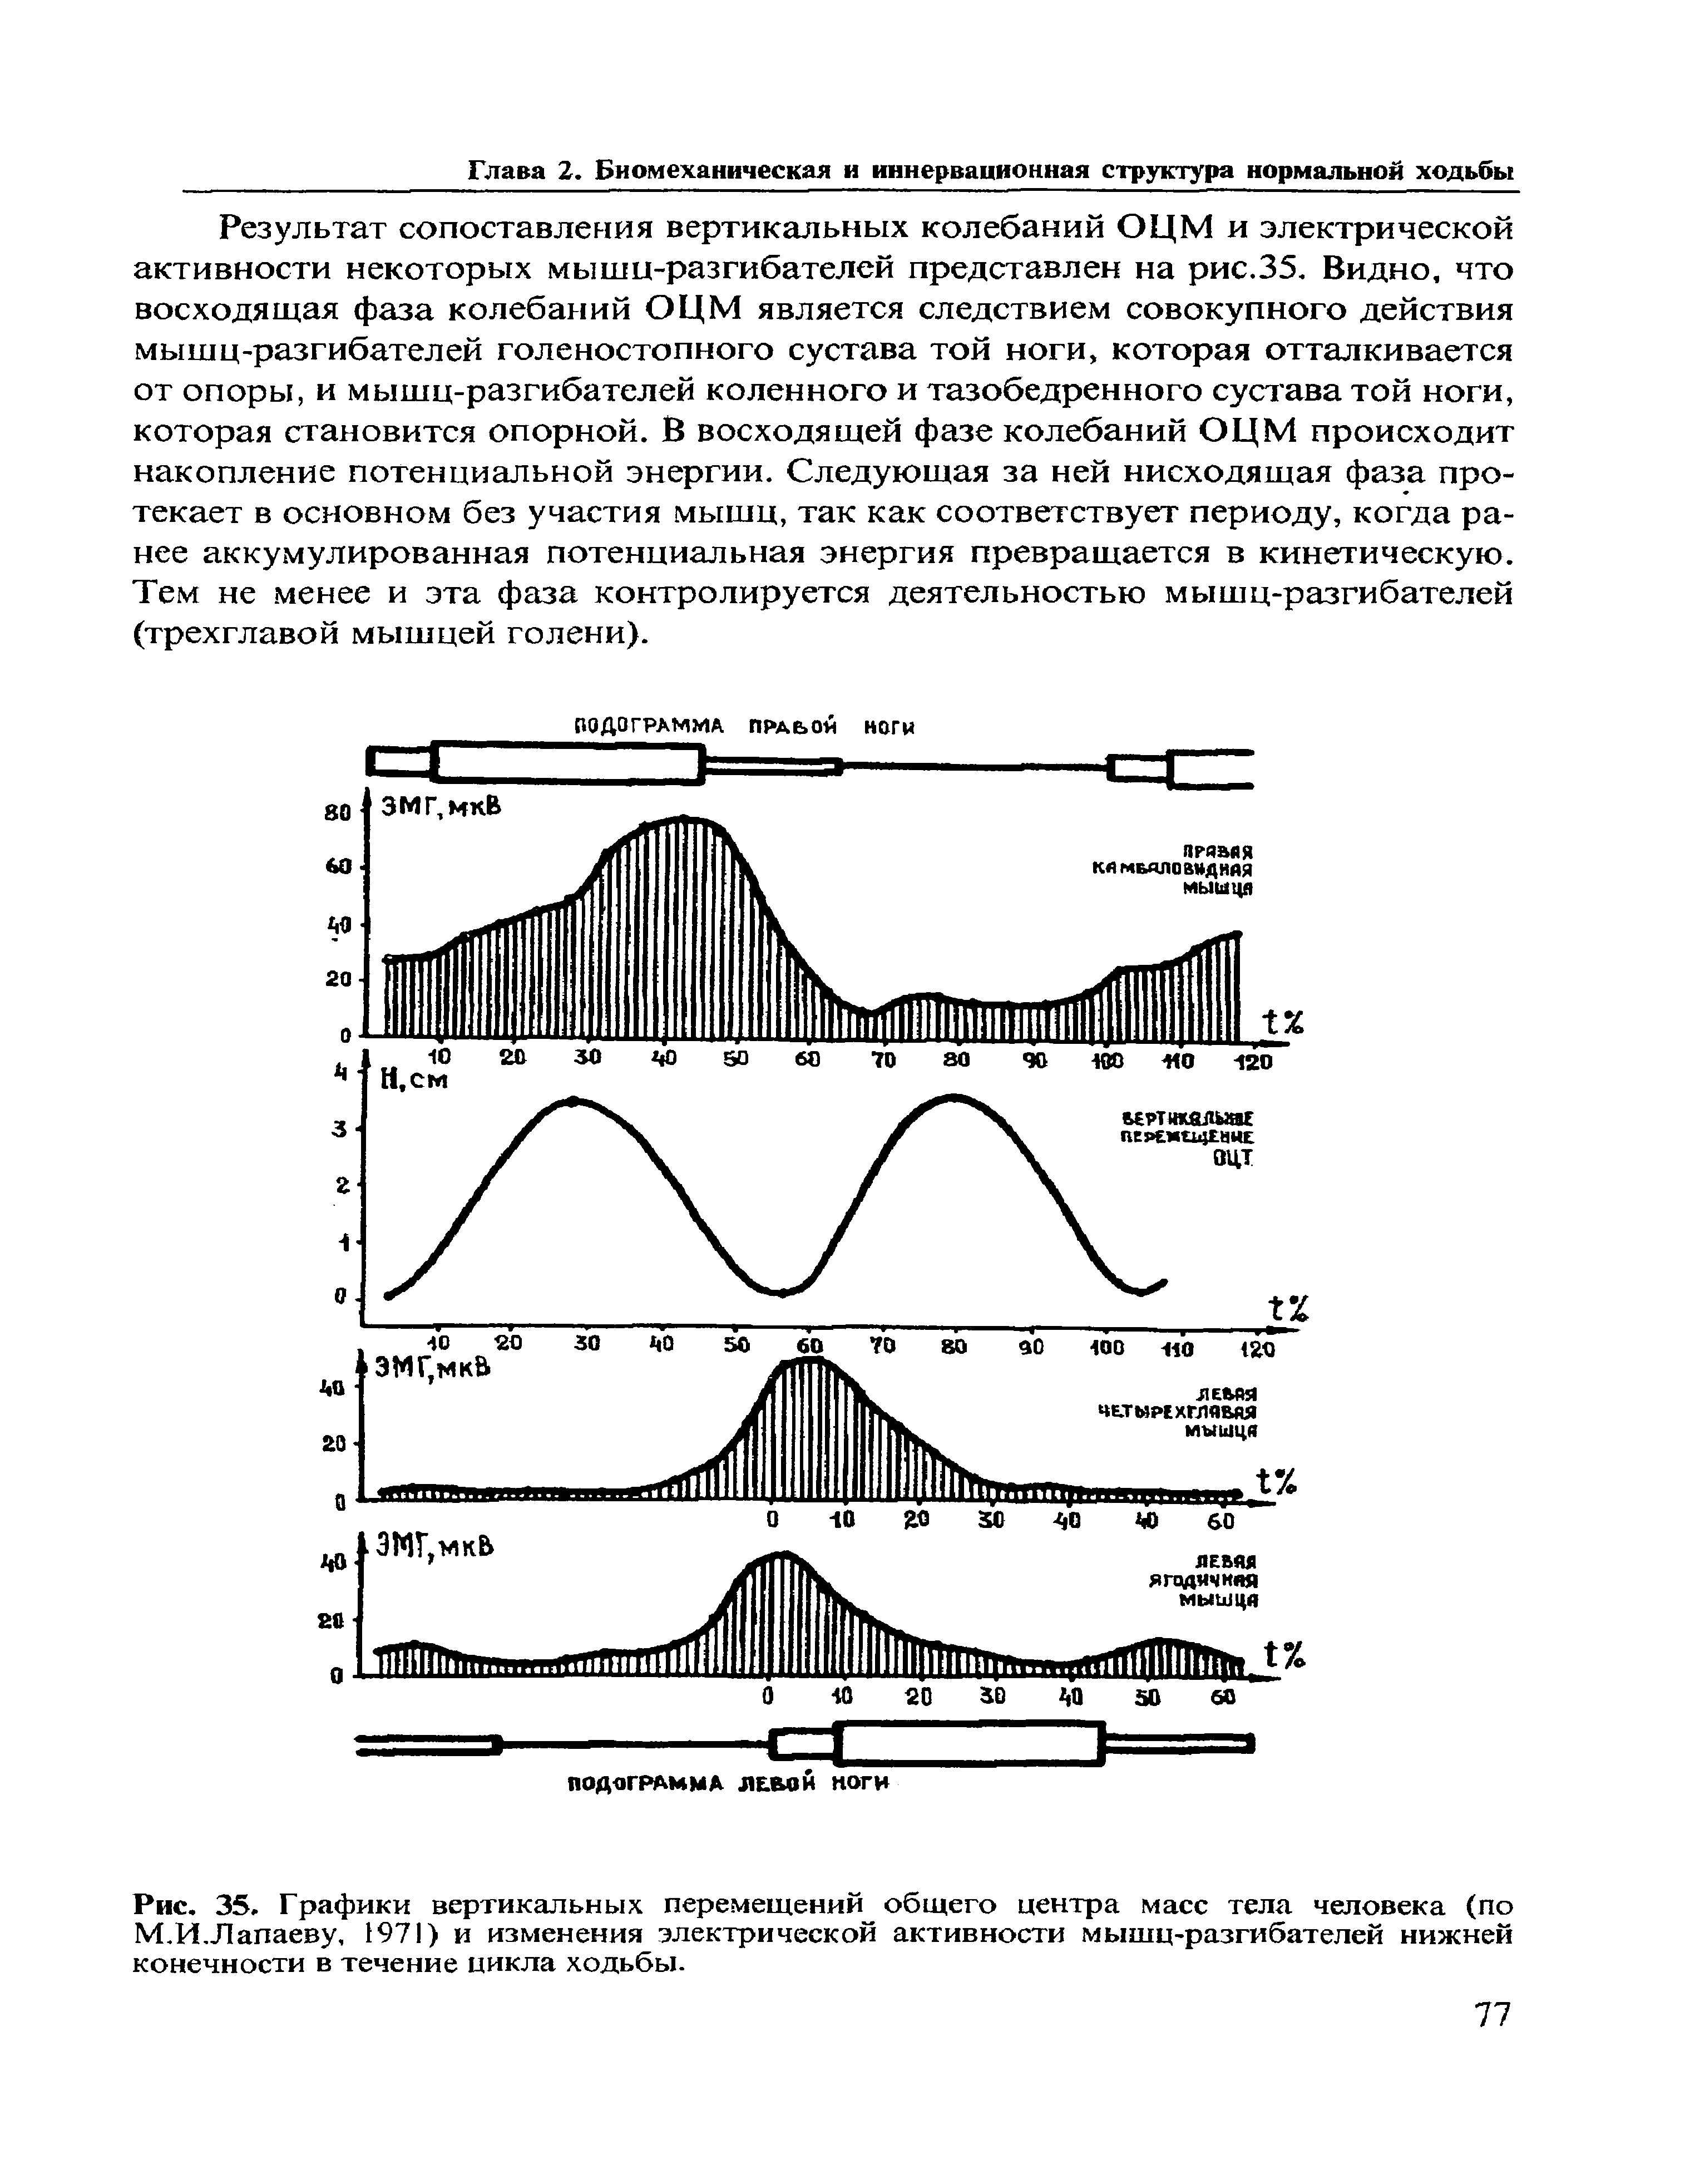 Рис. 35. Графики вертикальных перемещений общего центра масс тела человека (по М.И.Лапаеву, 1971) и изменения электрической активности мышц-разгибателей нижней конечности в течение цикла ходьбы.